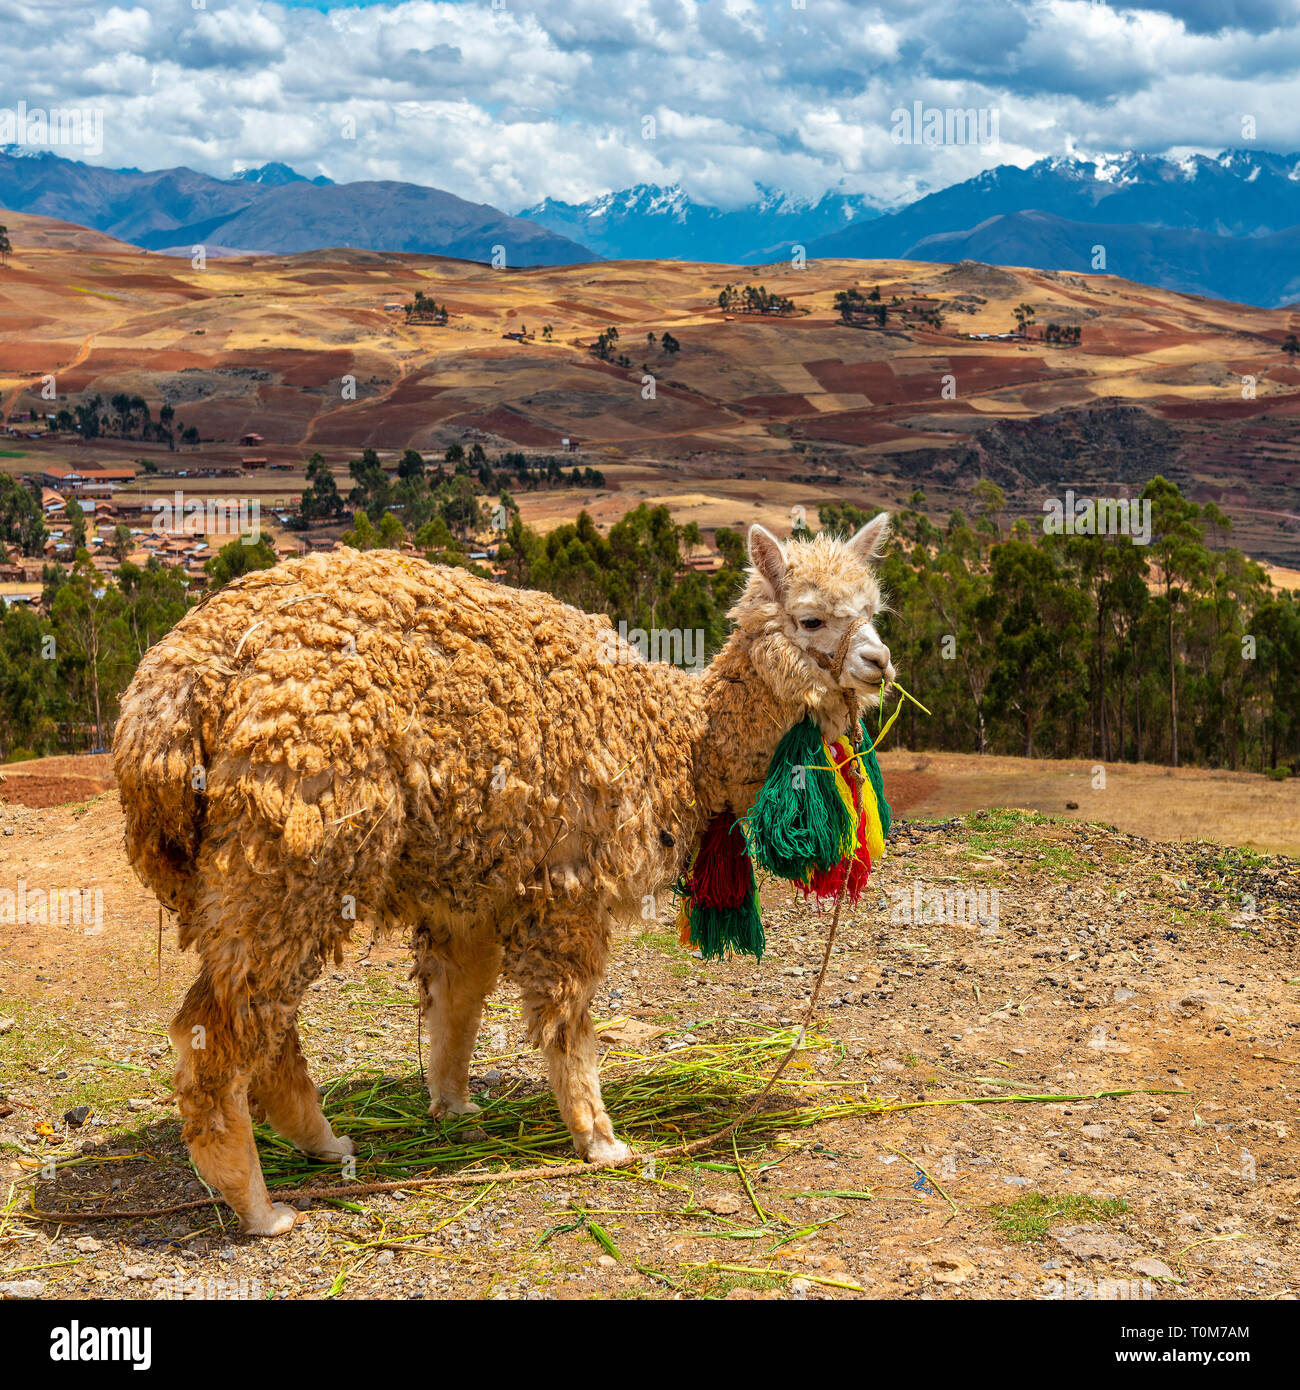 Ritratto di un llama (lama glama) nella Valle Sacra degli Inca con la cordigliera delle Ande in background, Provincia di Cusco, Perù. Foto Stock